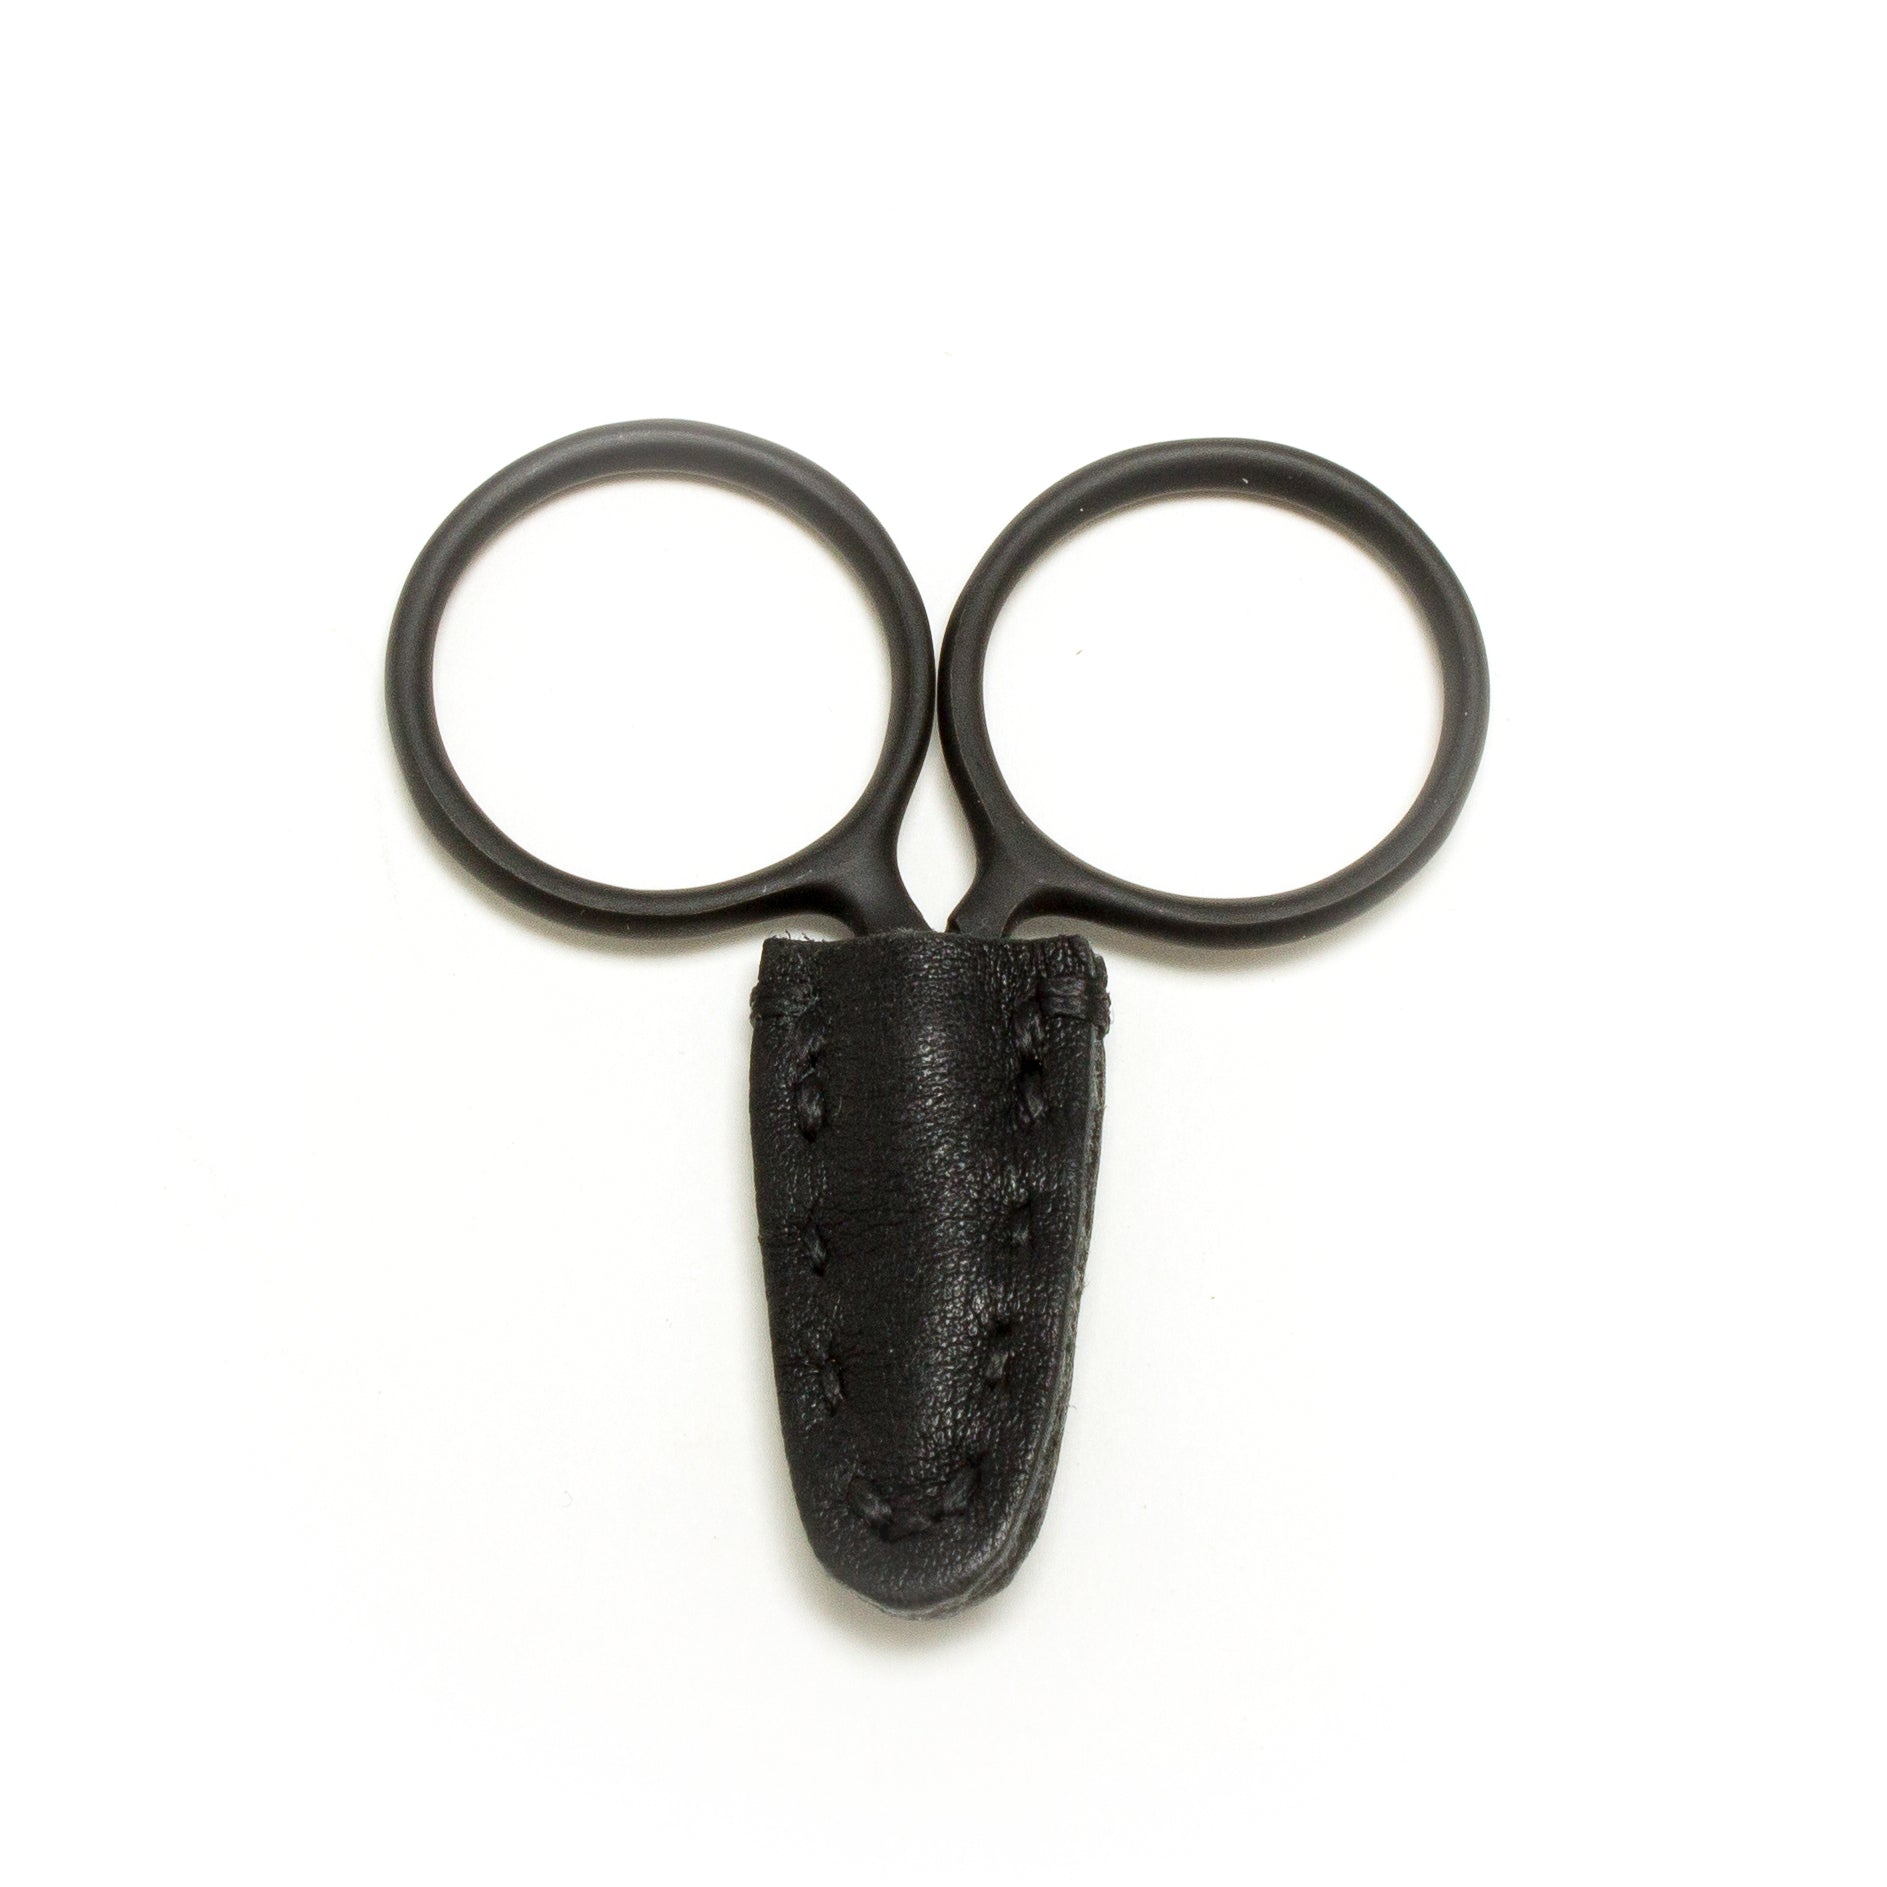 Small scissors BLACK - 40mm (1.6